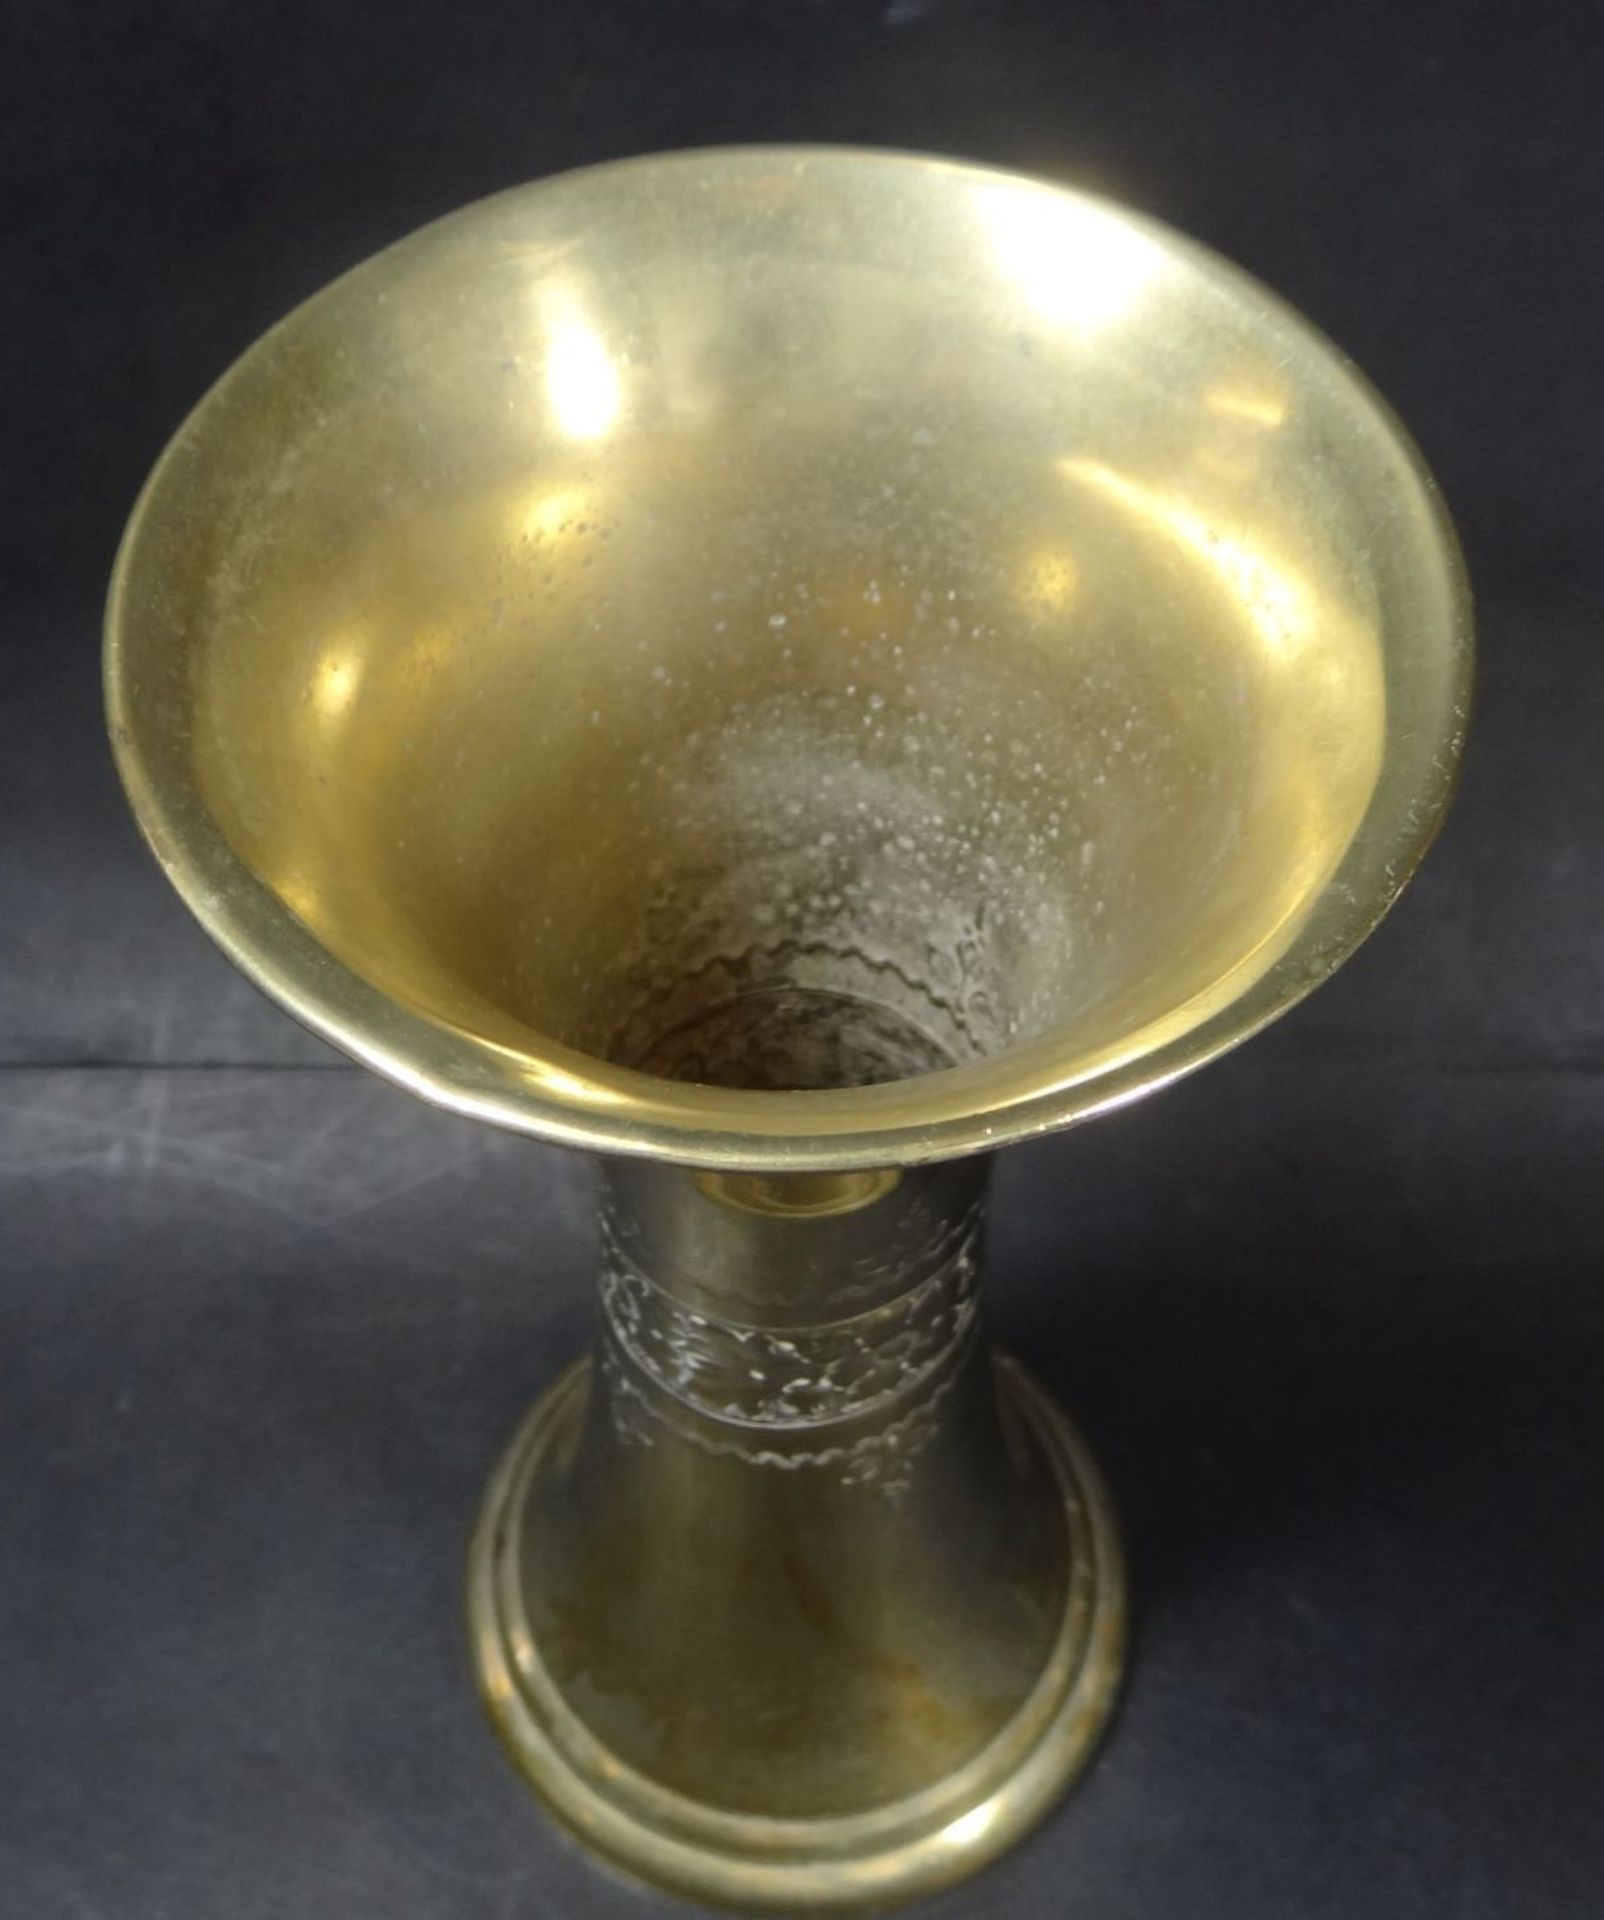 Messing-Vase, ehemals versilbert, H-17 cm- - -22.61 % buyer's premium on the hammer priceVAT - Bild 4 aus 4